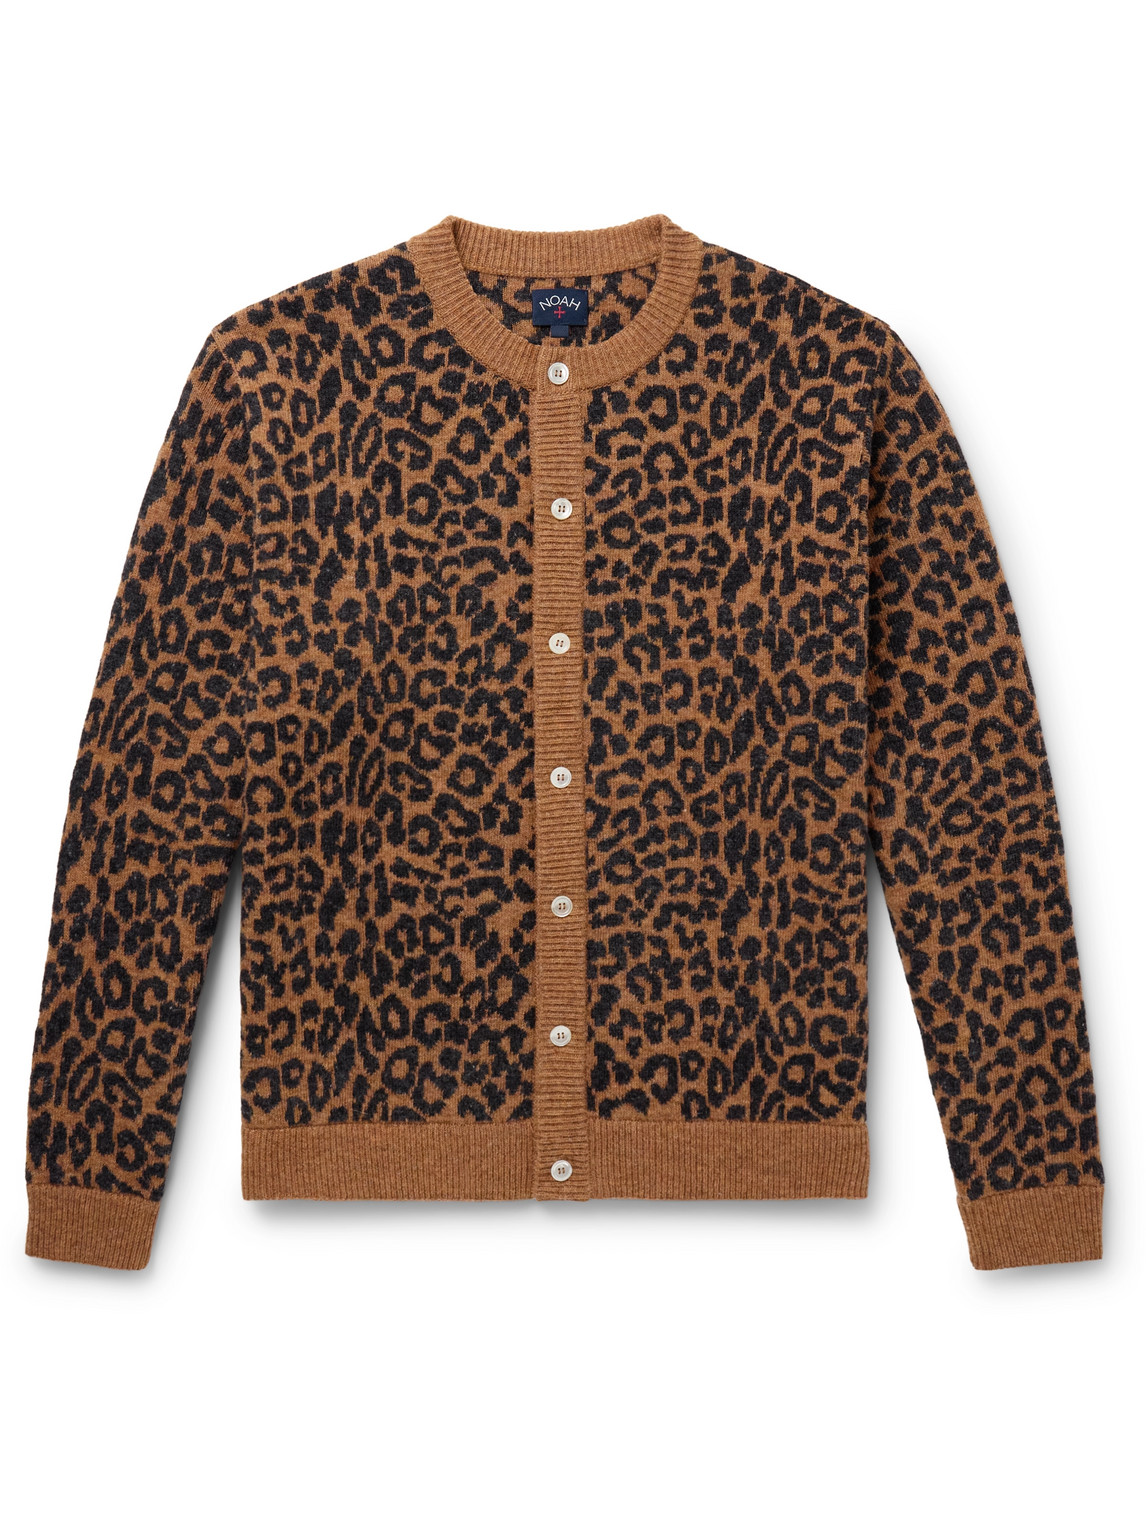 Leopard-Jacquard Wool Cardigan